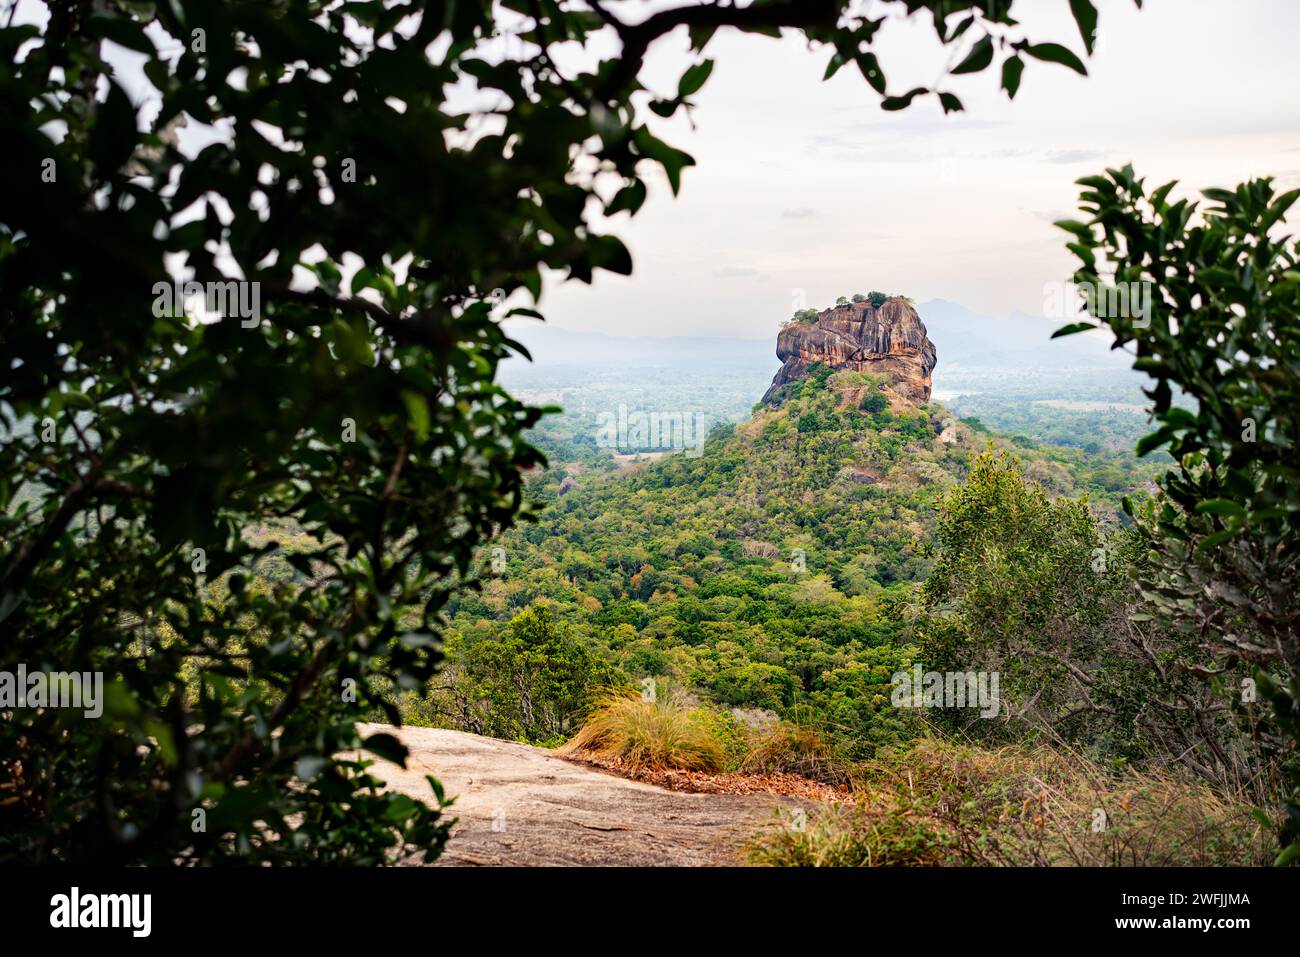 Sigiriya, Sri Lanka. Lion's Rock de la montagne Pidurangala. Voyage à Dambulla, Srilanka. Tourisme dans le site du patrimoine mondial. Trekking en forêt verte. Banque D'Images